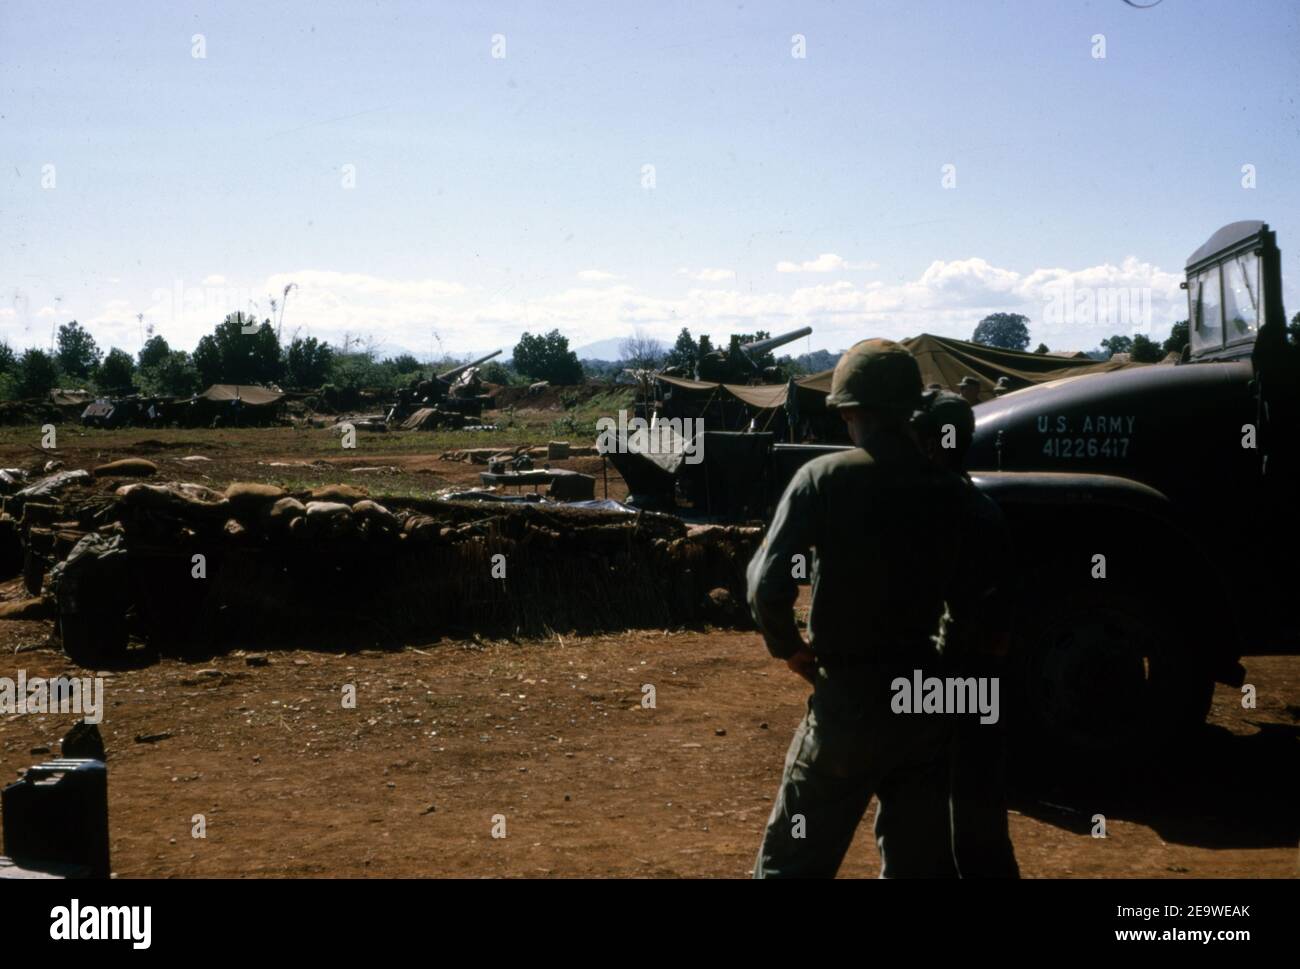 Etats-Unis Vietnam-Krieg armée américaine Selbstfahrgeschütz (Selbstfahrlafette) M110 203 mm - Guerre du Vietnam arme automotrice M110 8 pouces de l'armée des États-Unis Banque D'Images